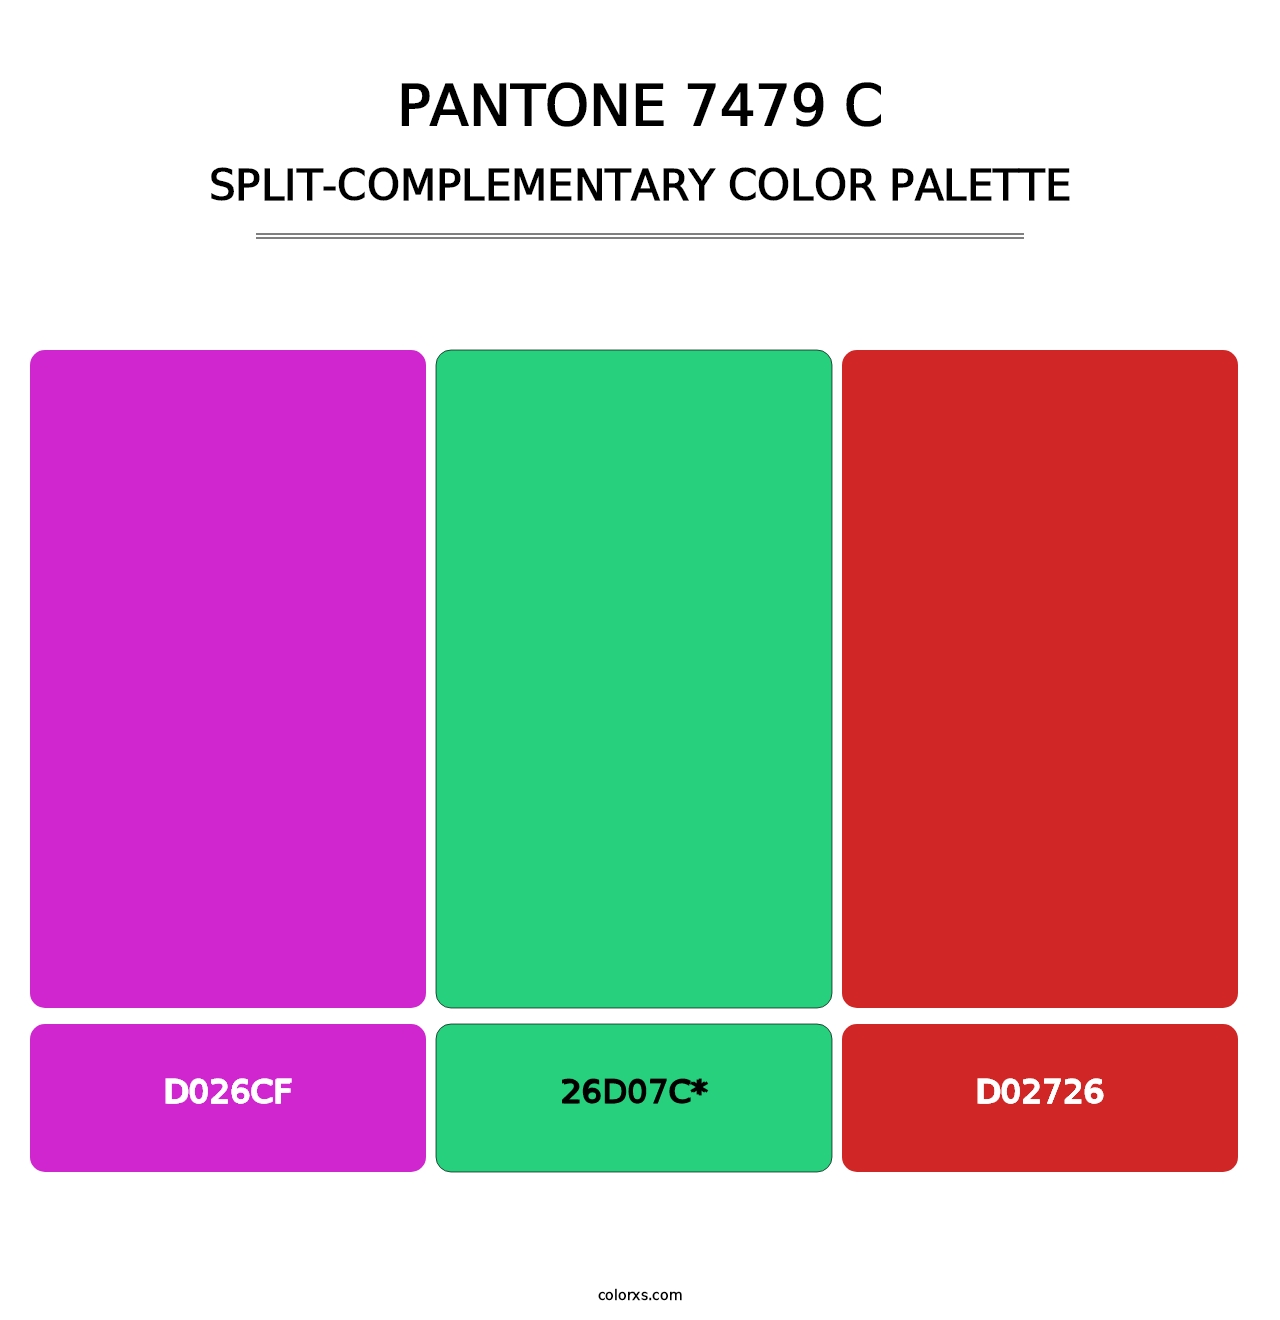 PANTONE 7479 C - Split-Complementary Color Palette